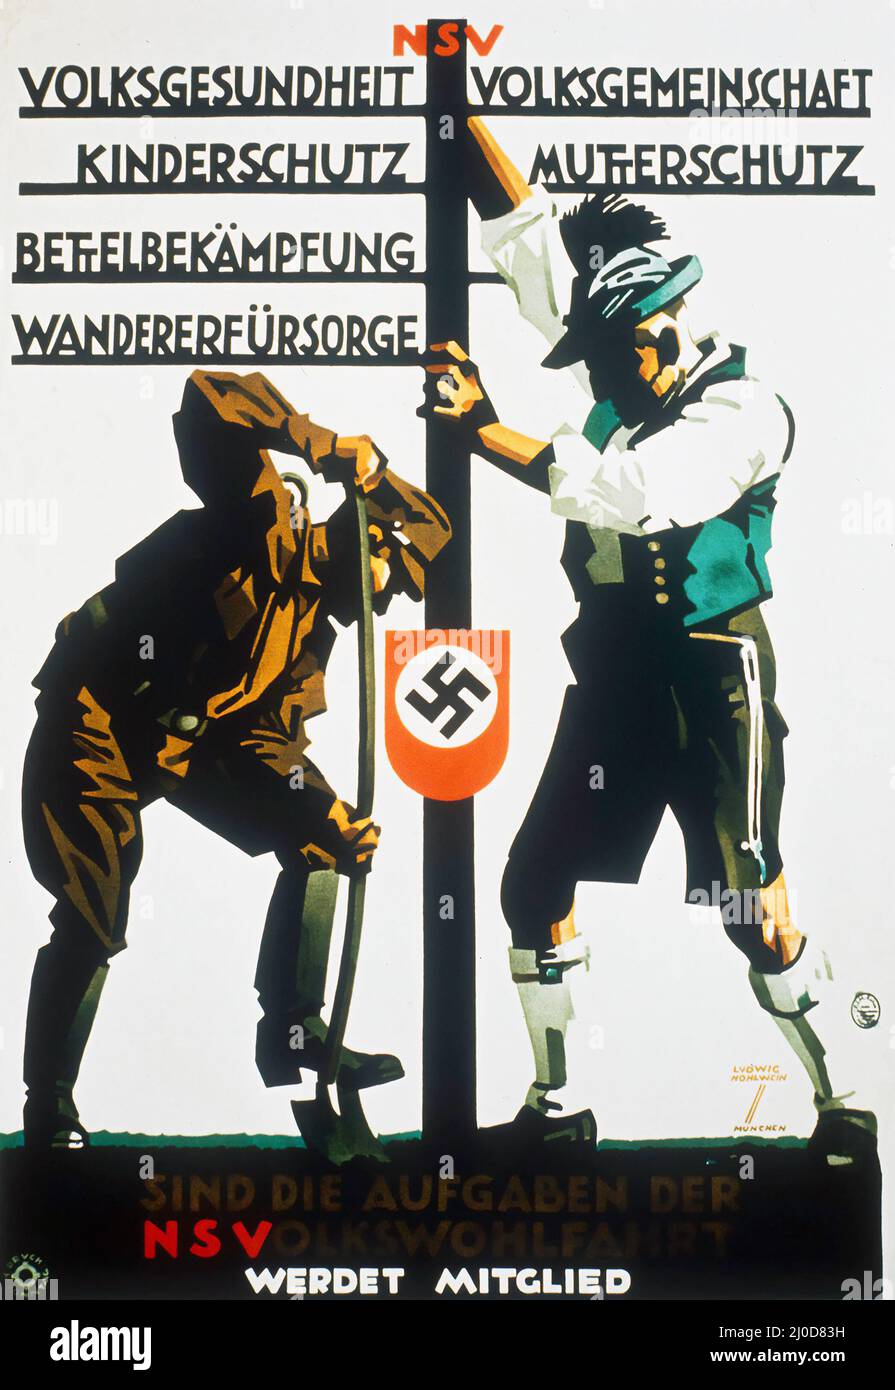 NSDAP Volksgemeinschaft NS VOLKSWOHLFAHRT, 1934 - Nazi propaganda by Ludwig Hohlwein  (1874–1949). Stock Photo